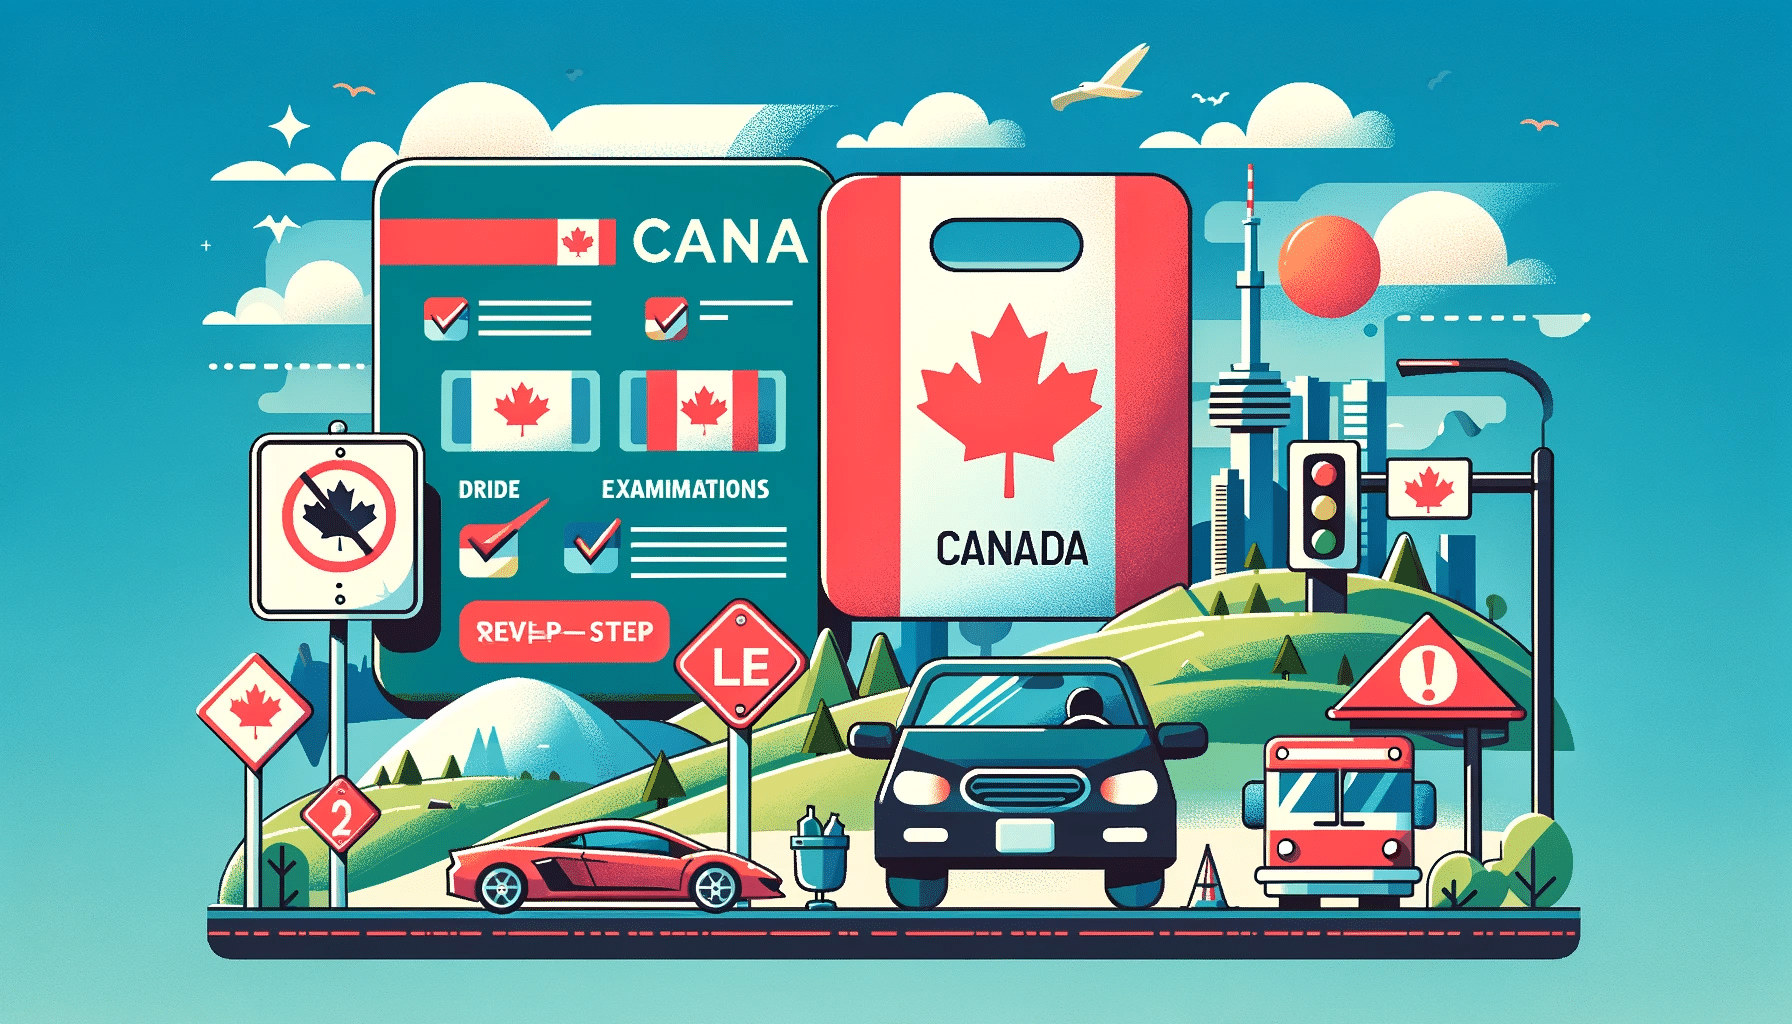 Ilustración detallada que muestra el proceso de obtener una licencia de manejo en Canadá, con señales de tráfico, un examen de manejo, y un paisaje urbano canadiense.